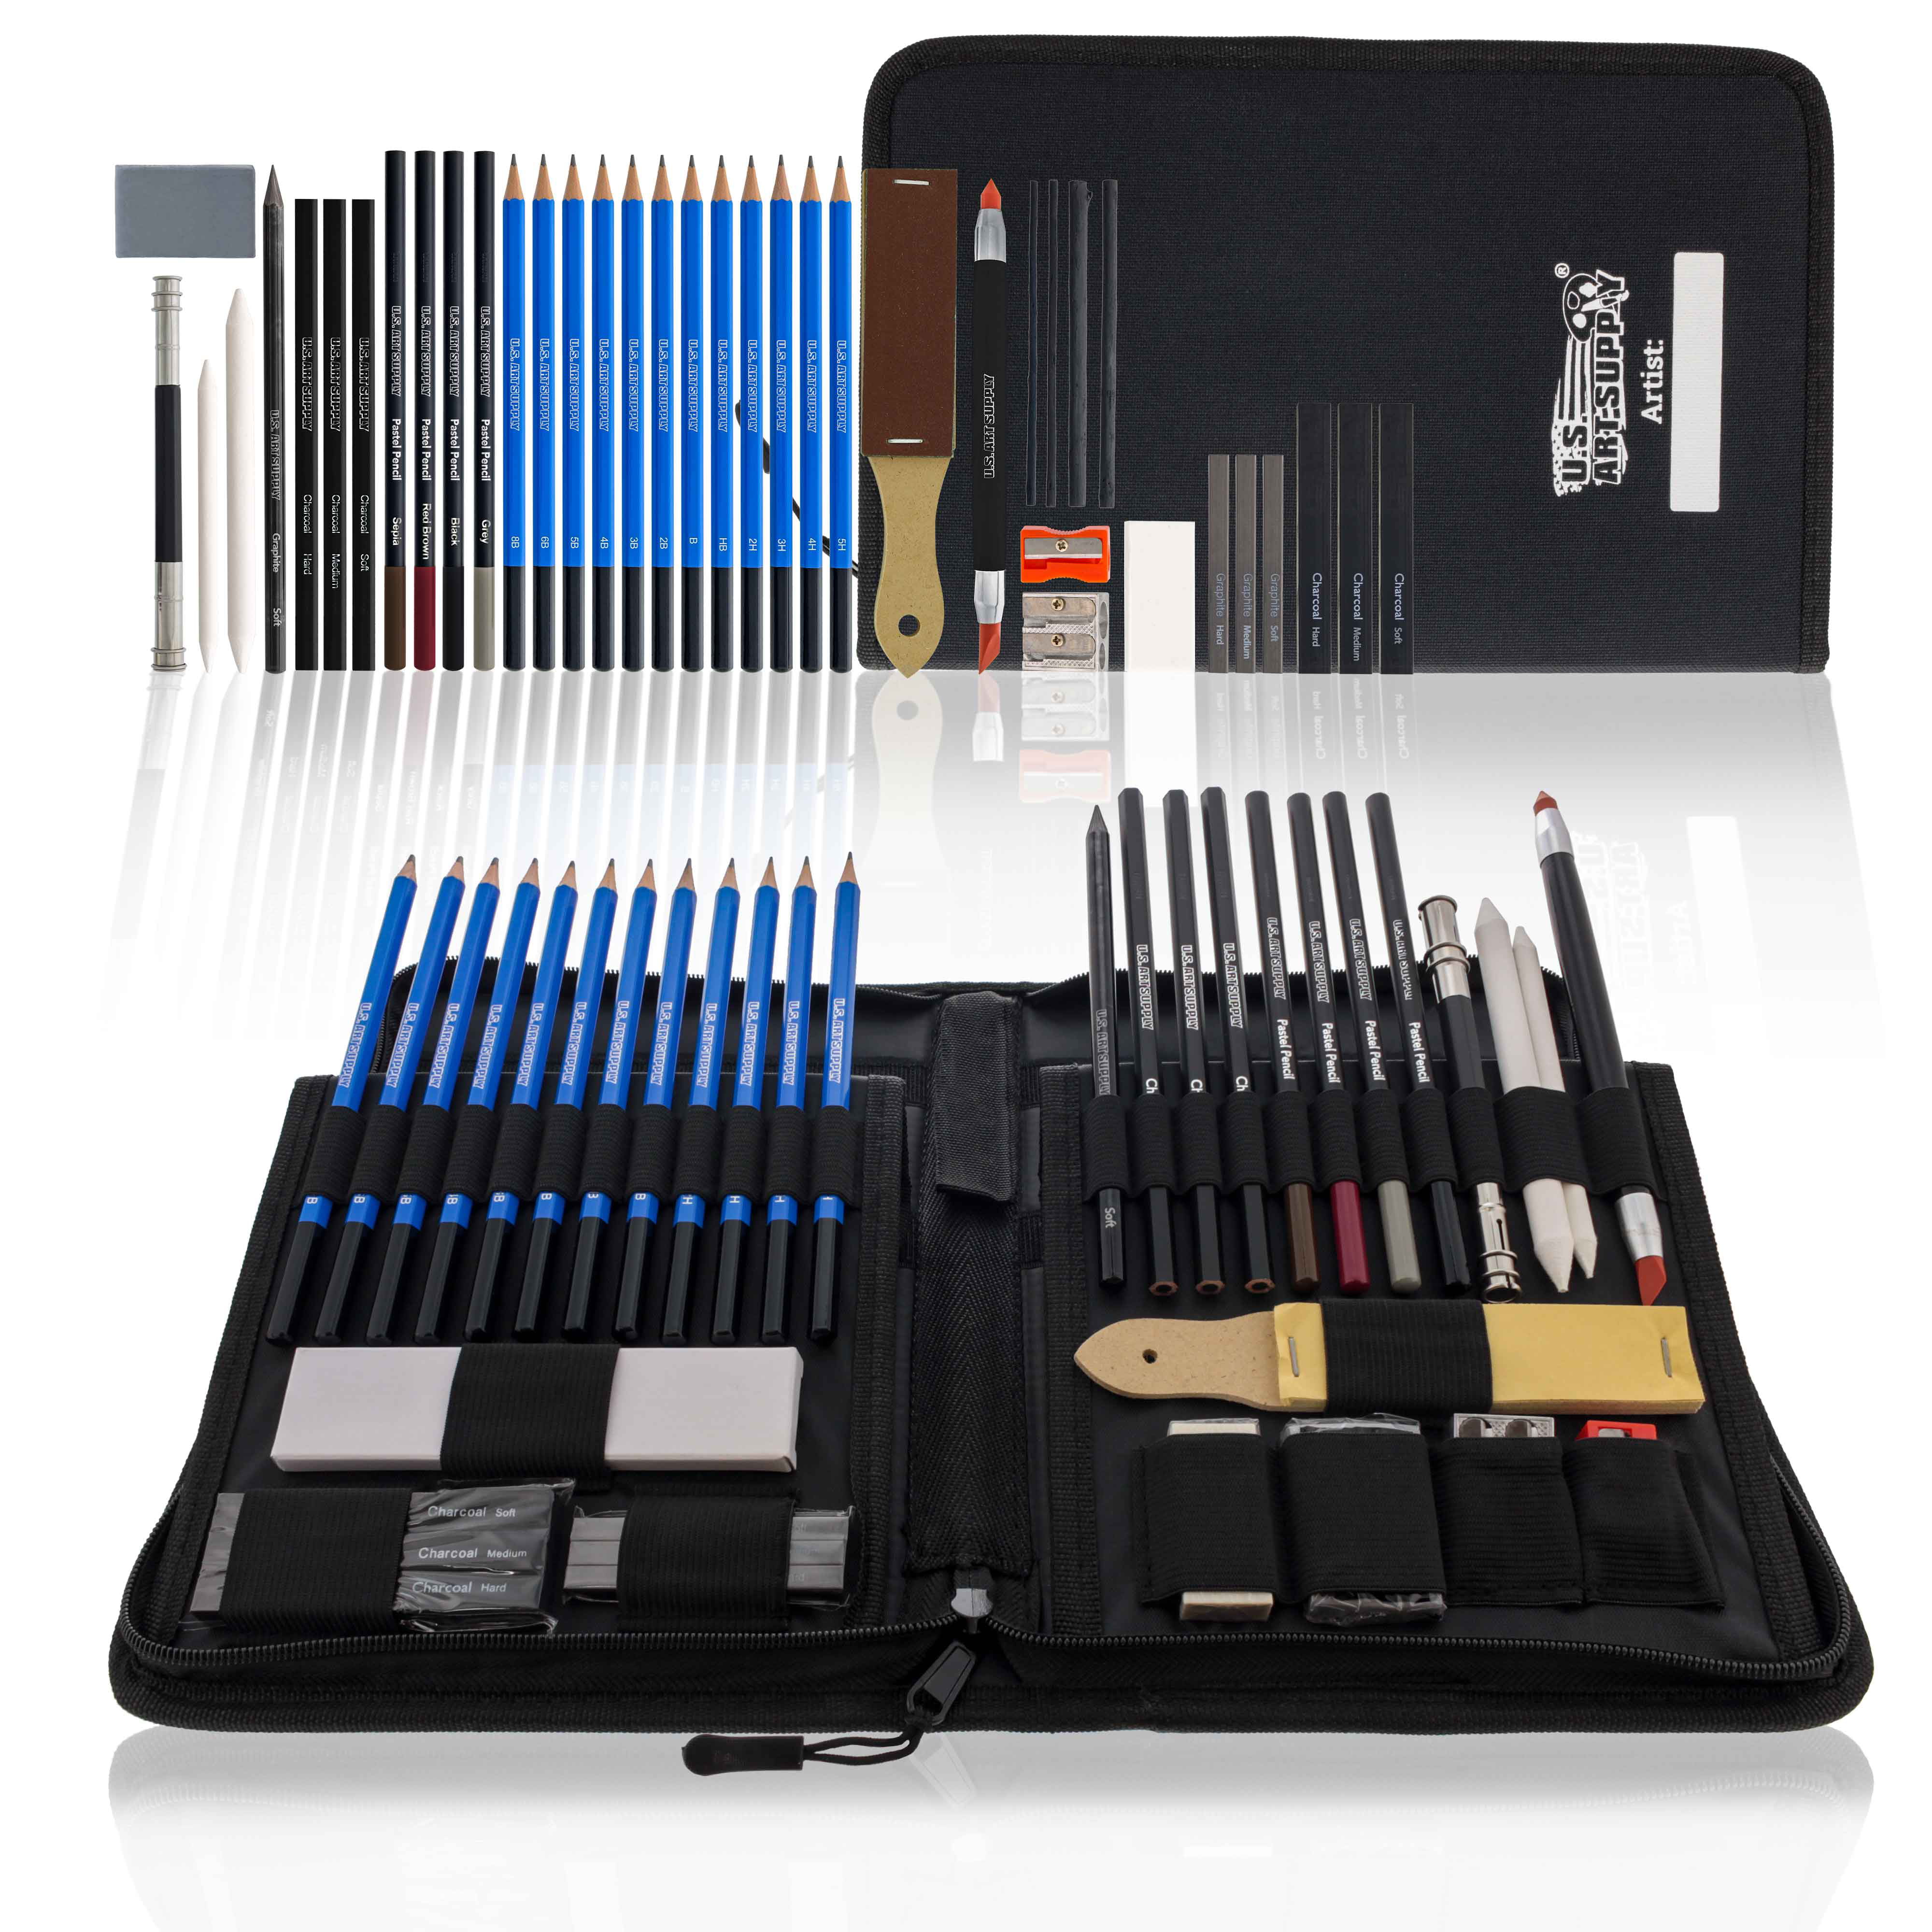  H & B Kit de dibujo profesional de 40 piezas, kit completo de  artista, incluye lápices de grafito, pasteles, sacapuntas y borrador : Arte  y Manualidades